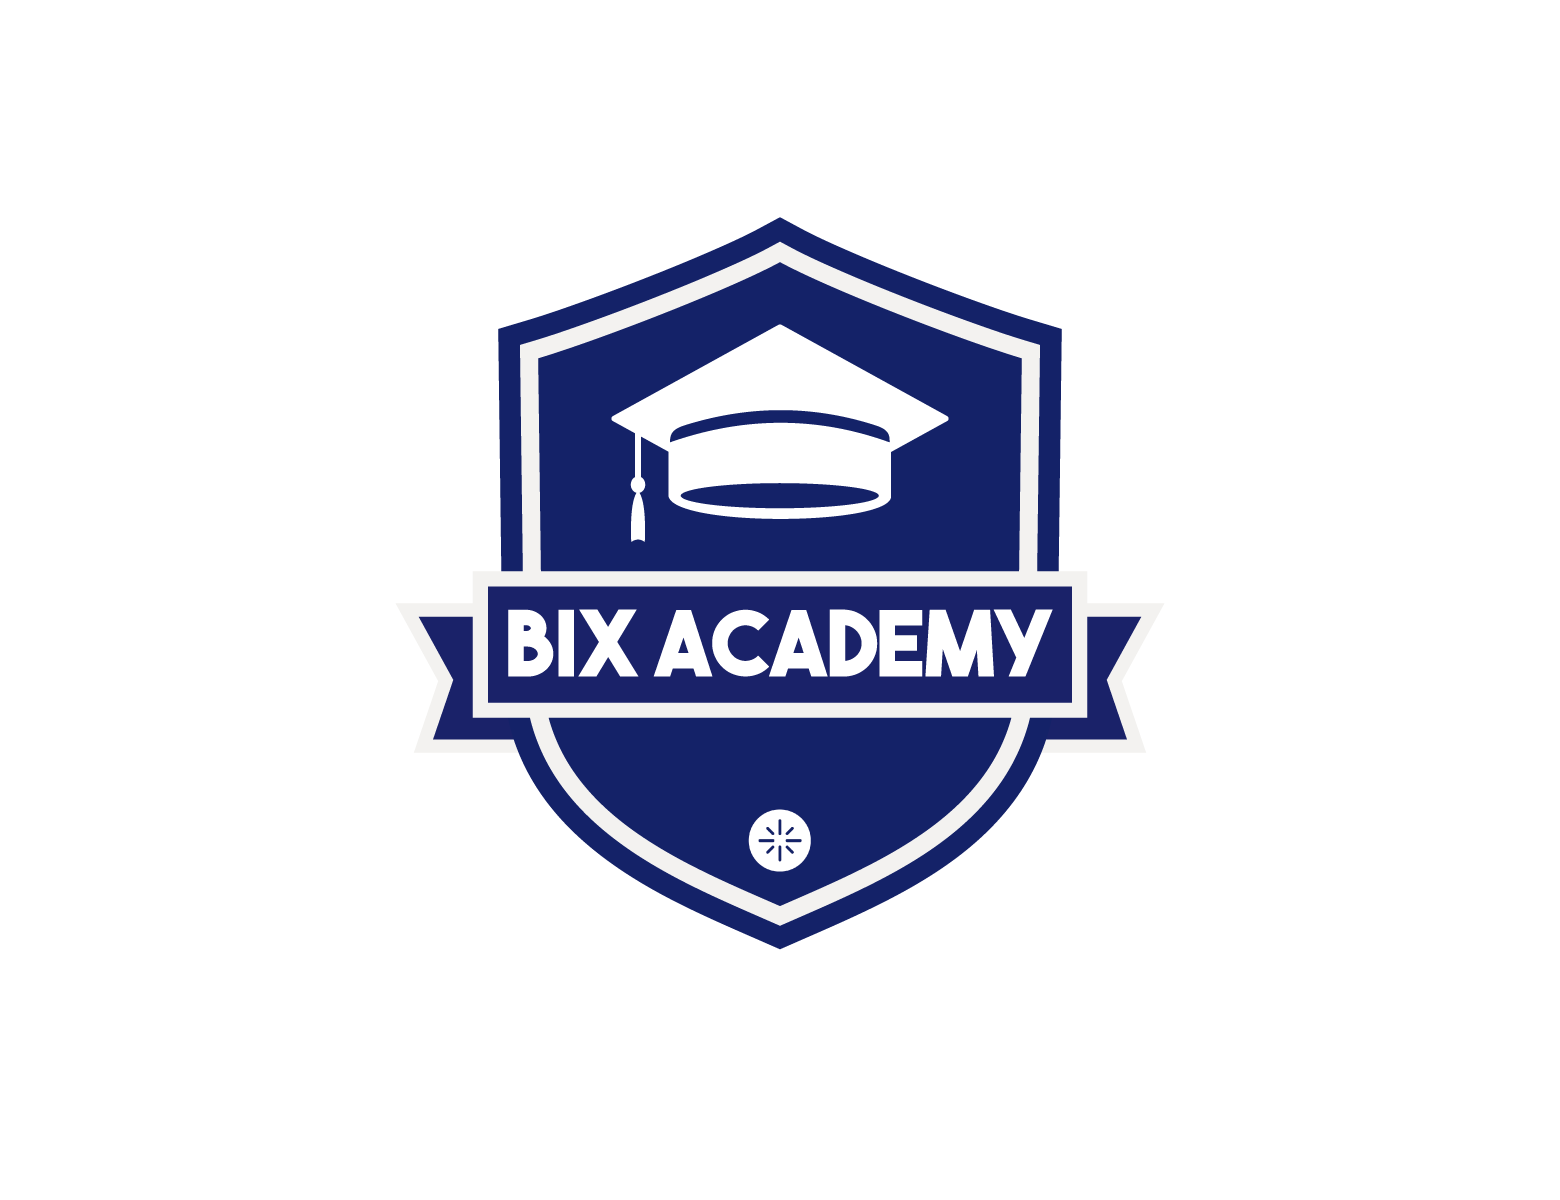 Bix Academy